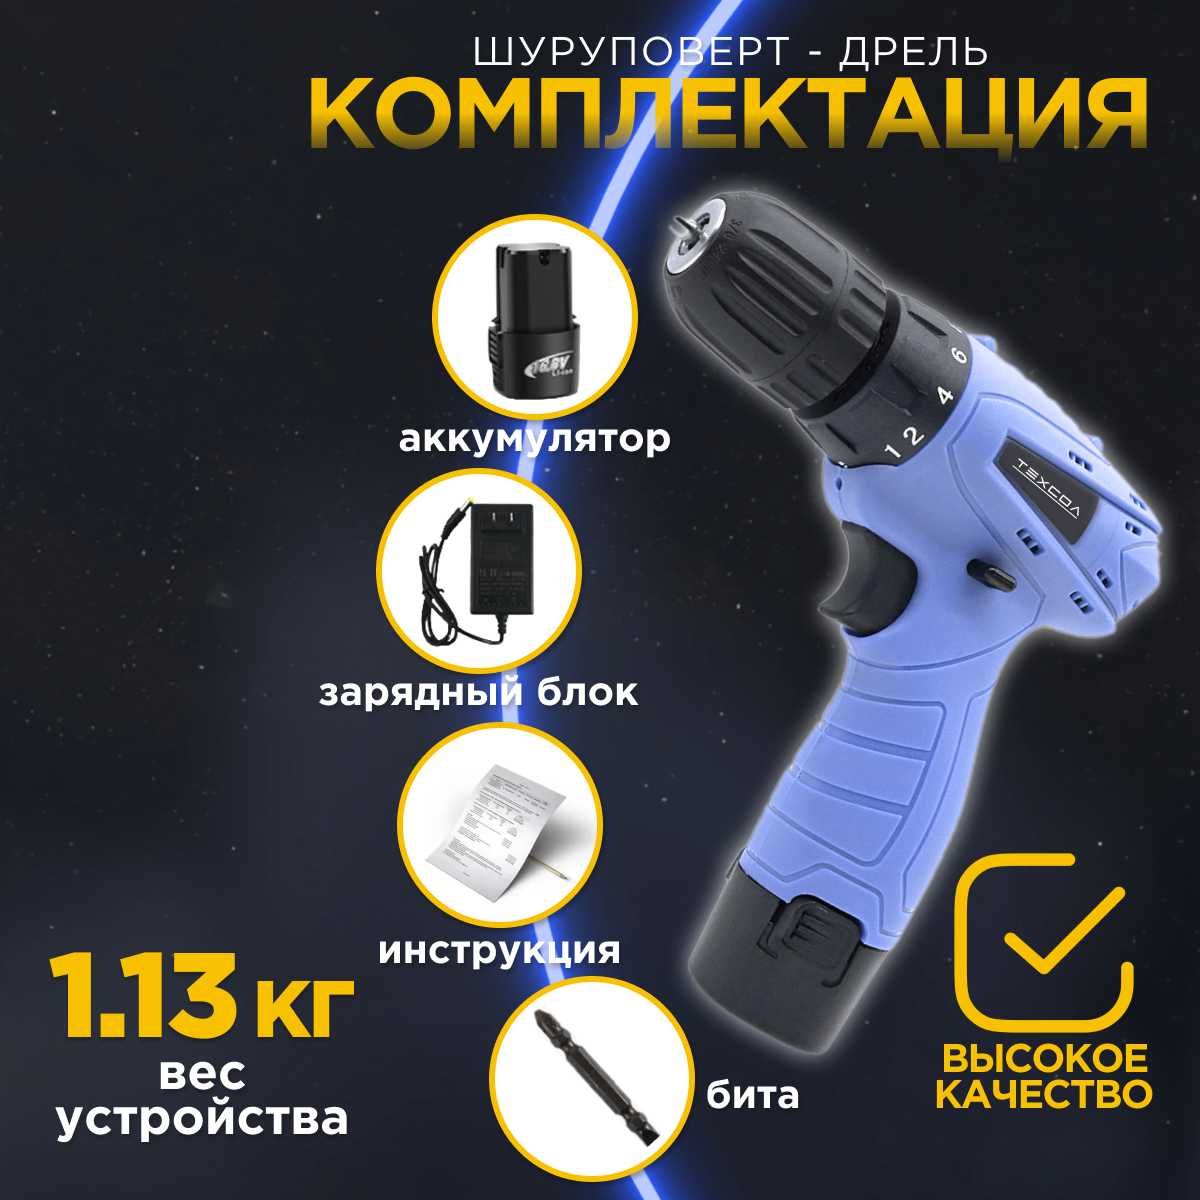 Аккумуляторный ручной шуруповерт дрель ТЕХСОЛ К15